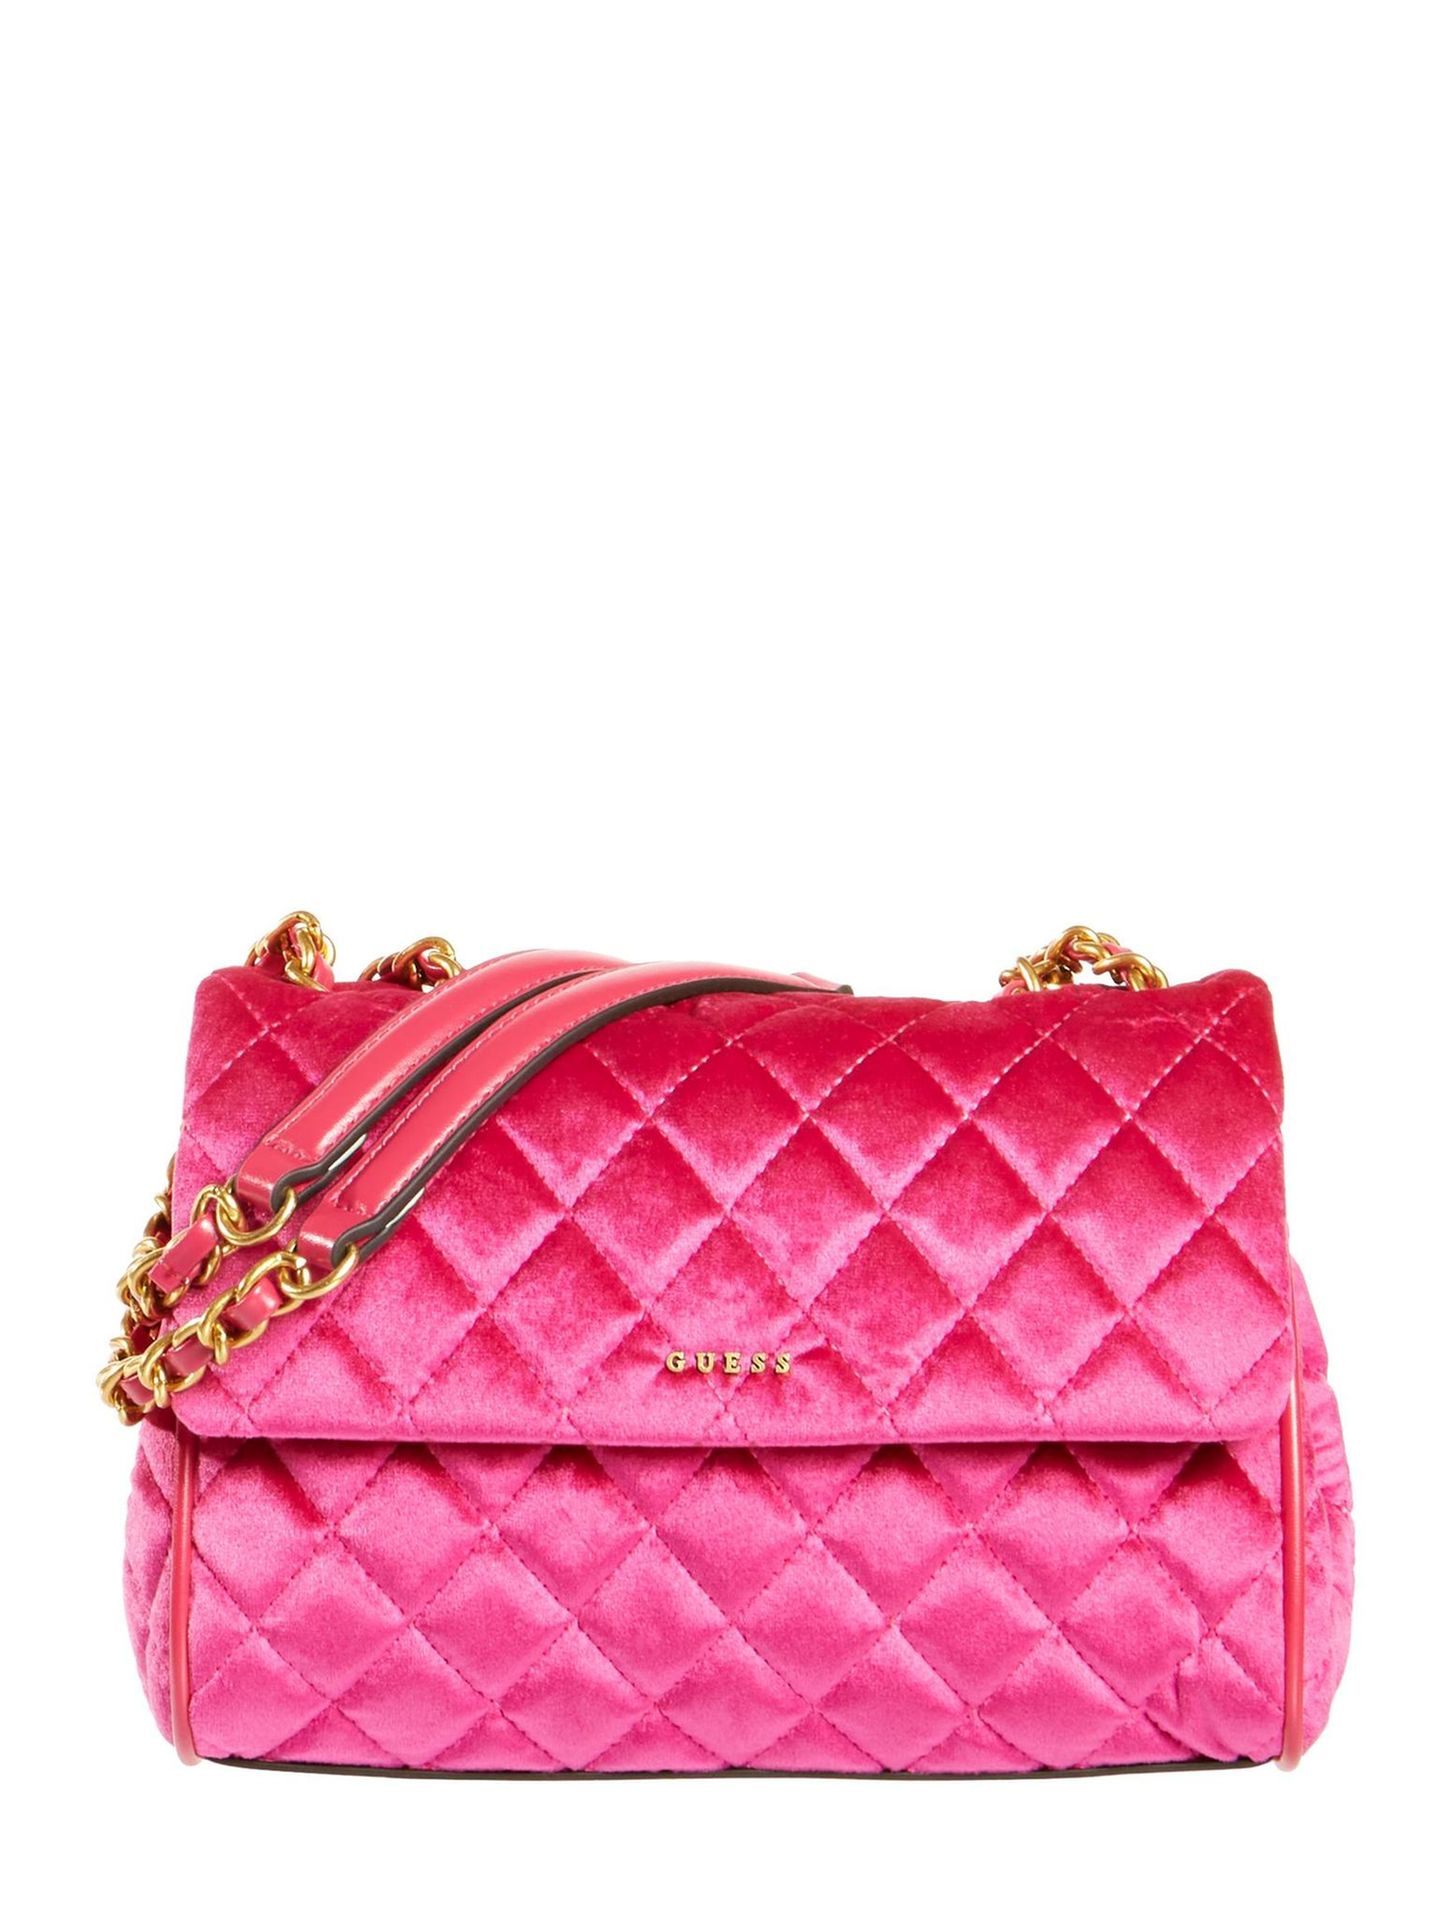 Zugegeben: Diese pinkfarbene Crossbody Bag von GUESS ist ziemlich auffällig, aber durch die Samt-Oberfläche wirkt sie festlich und stylisch. Passt perfekt zu schlichten Looks! Für rund 150 Euro erhältlich.